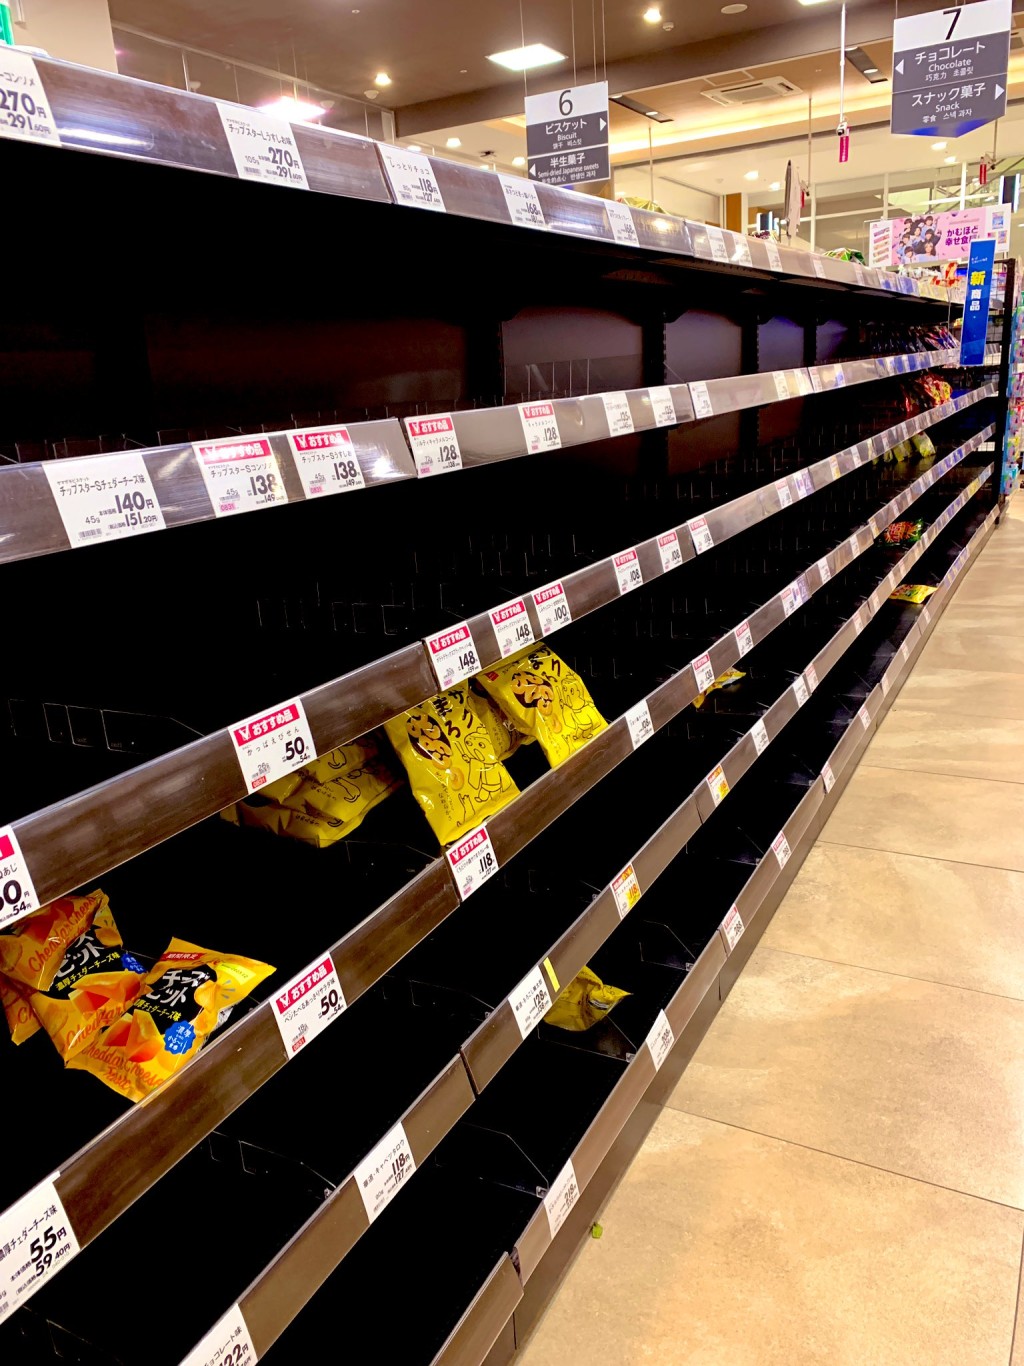 超市零食货架只剩三数包零食。 Twitter